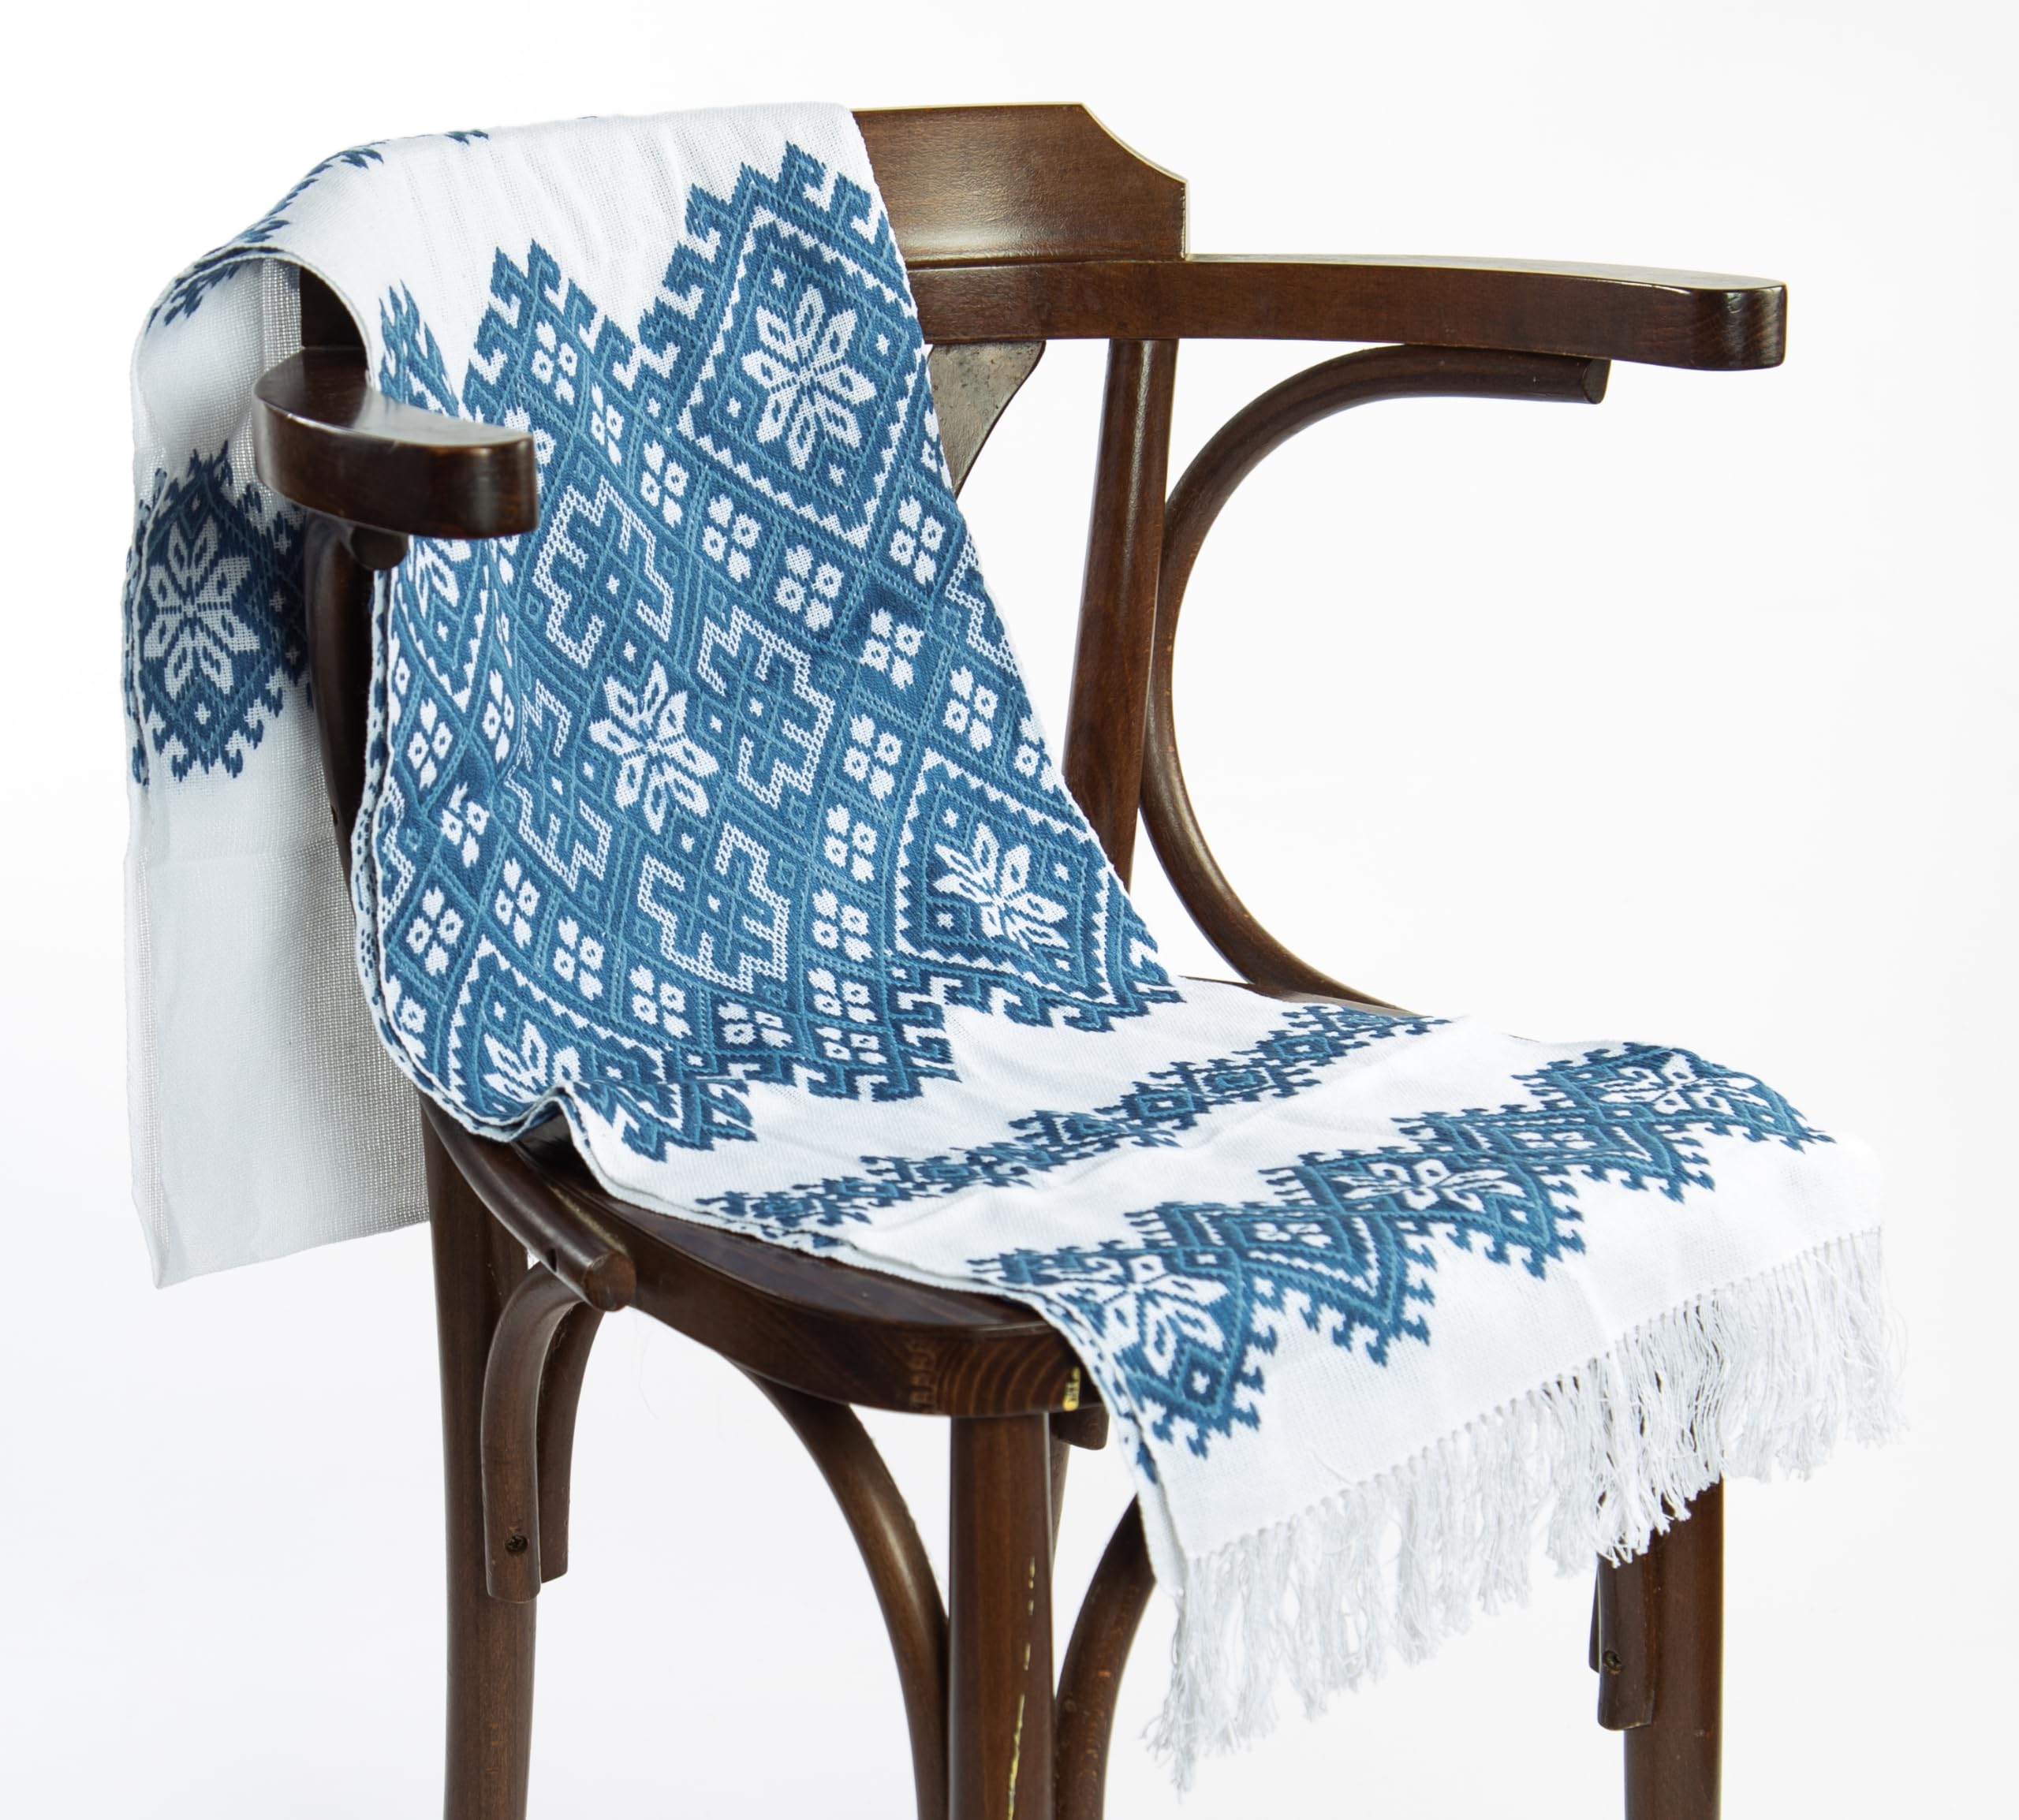 Rushnichok Ukrainian RUSHNYK Hand Embroidered Towel White Blue Gray Wedding Decor 190 x 33 cm